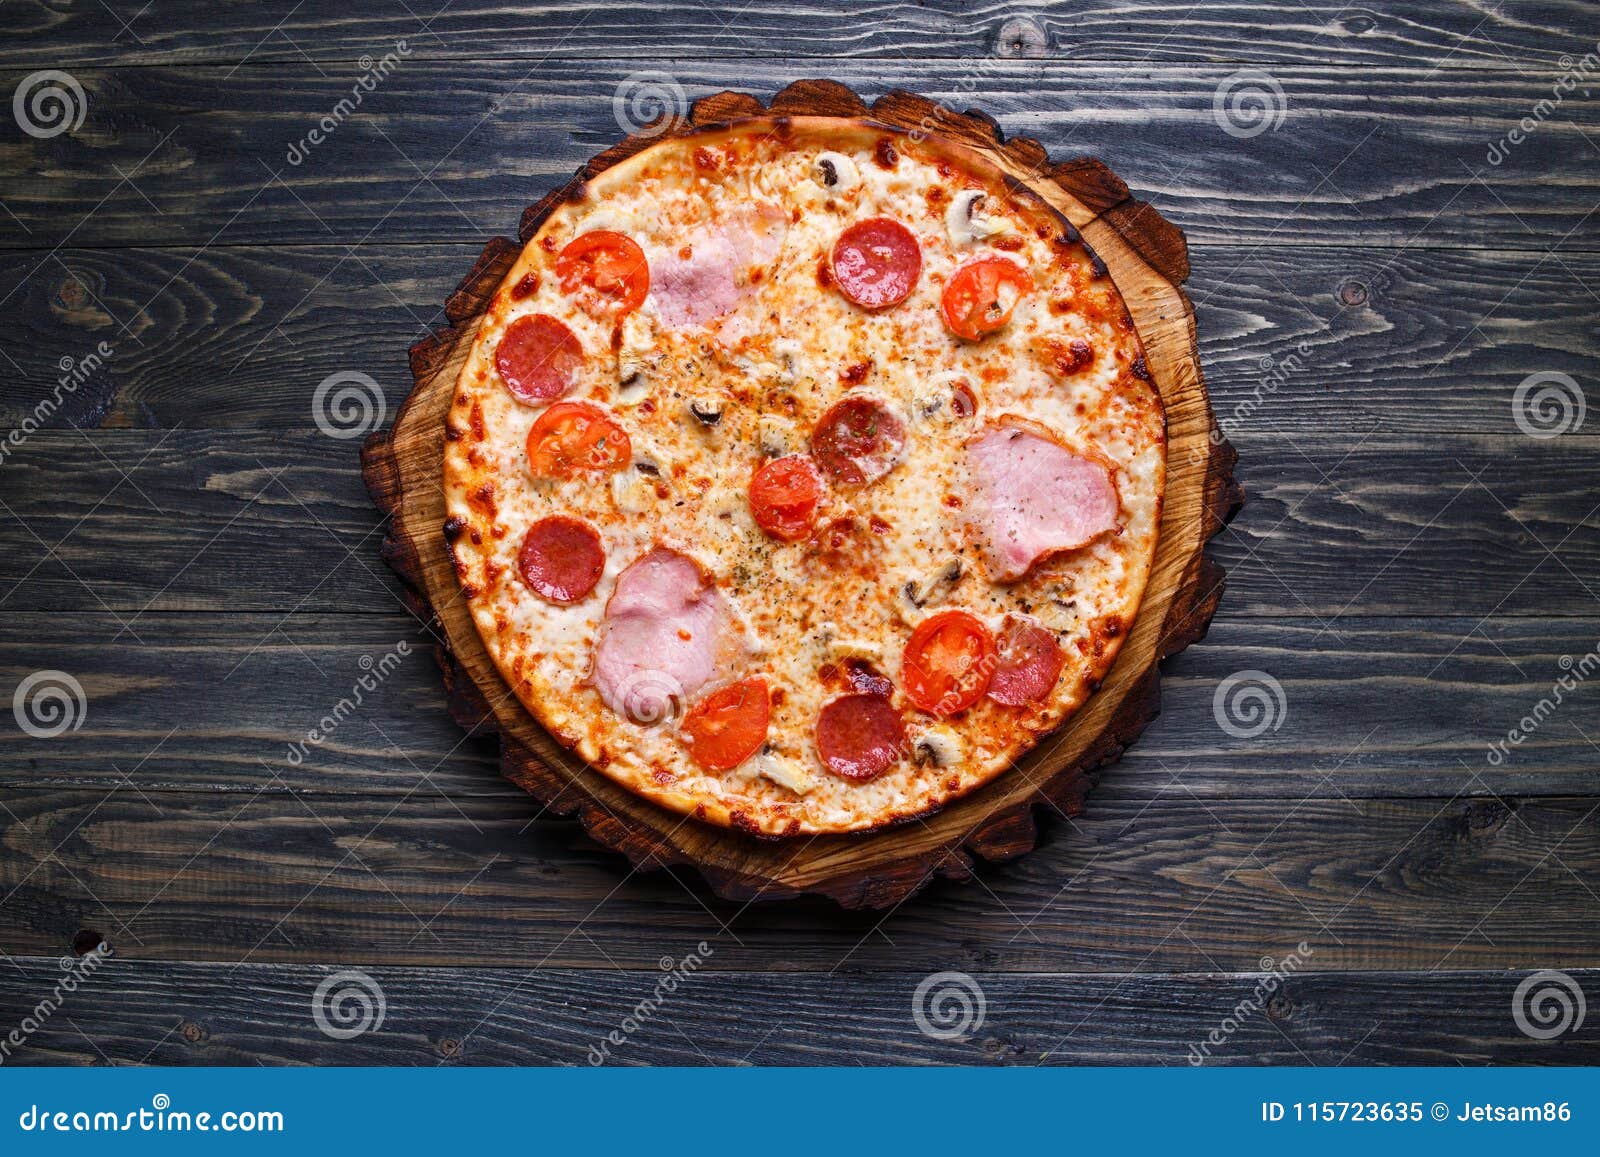 фото пицца сицилийская фото 93